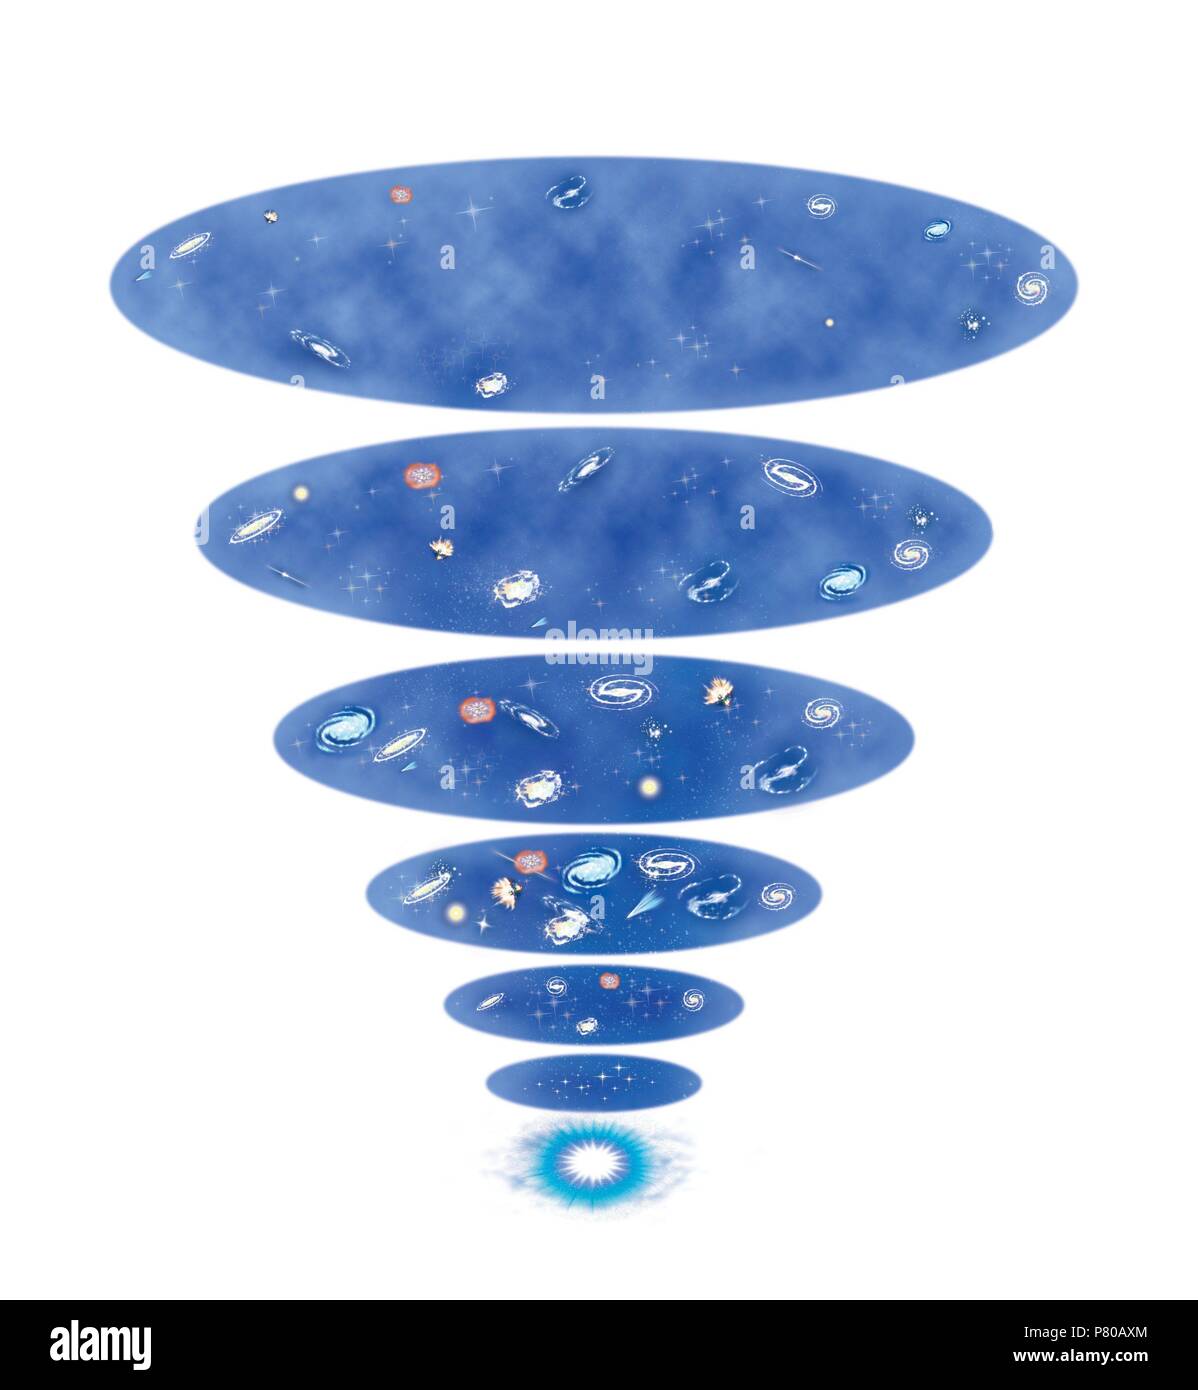 Big Bang universe. Stock Photo